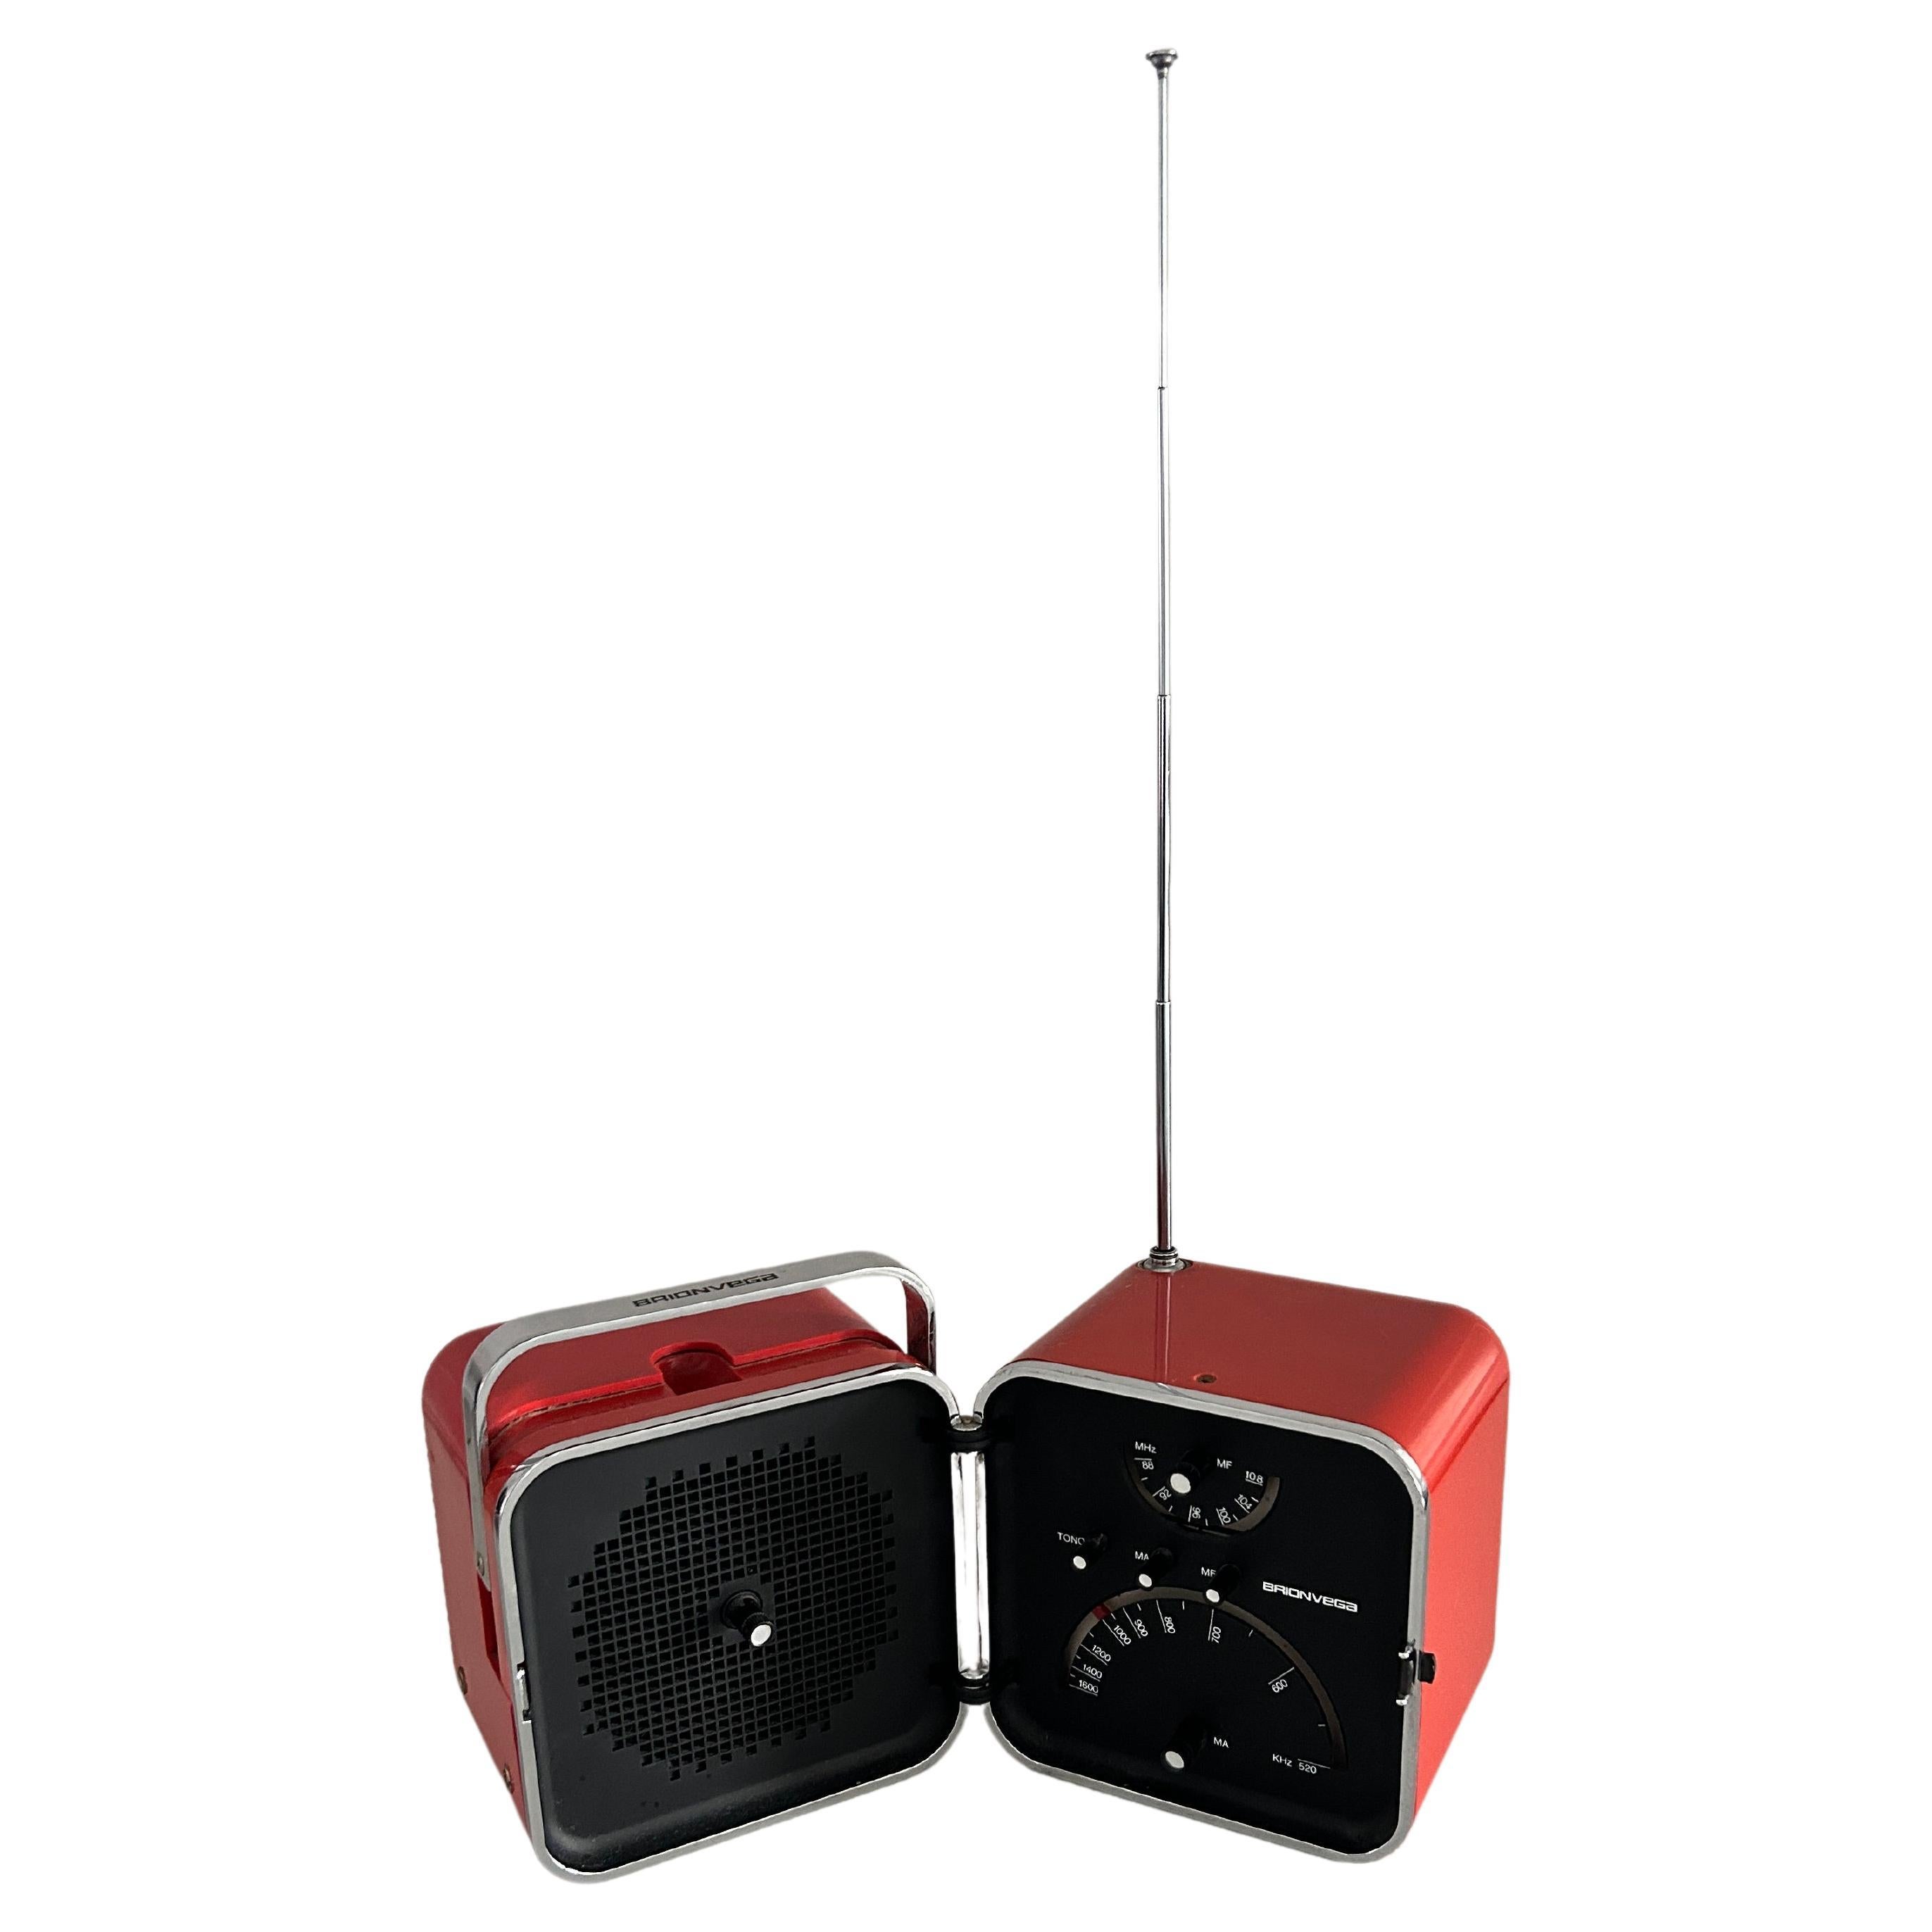 Radio Cube Brionvega mod. TS502, Richard Sapper et Marco Zanuso